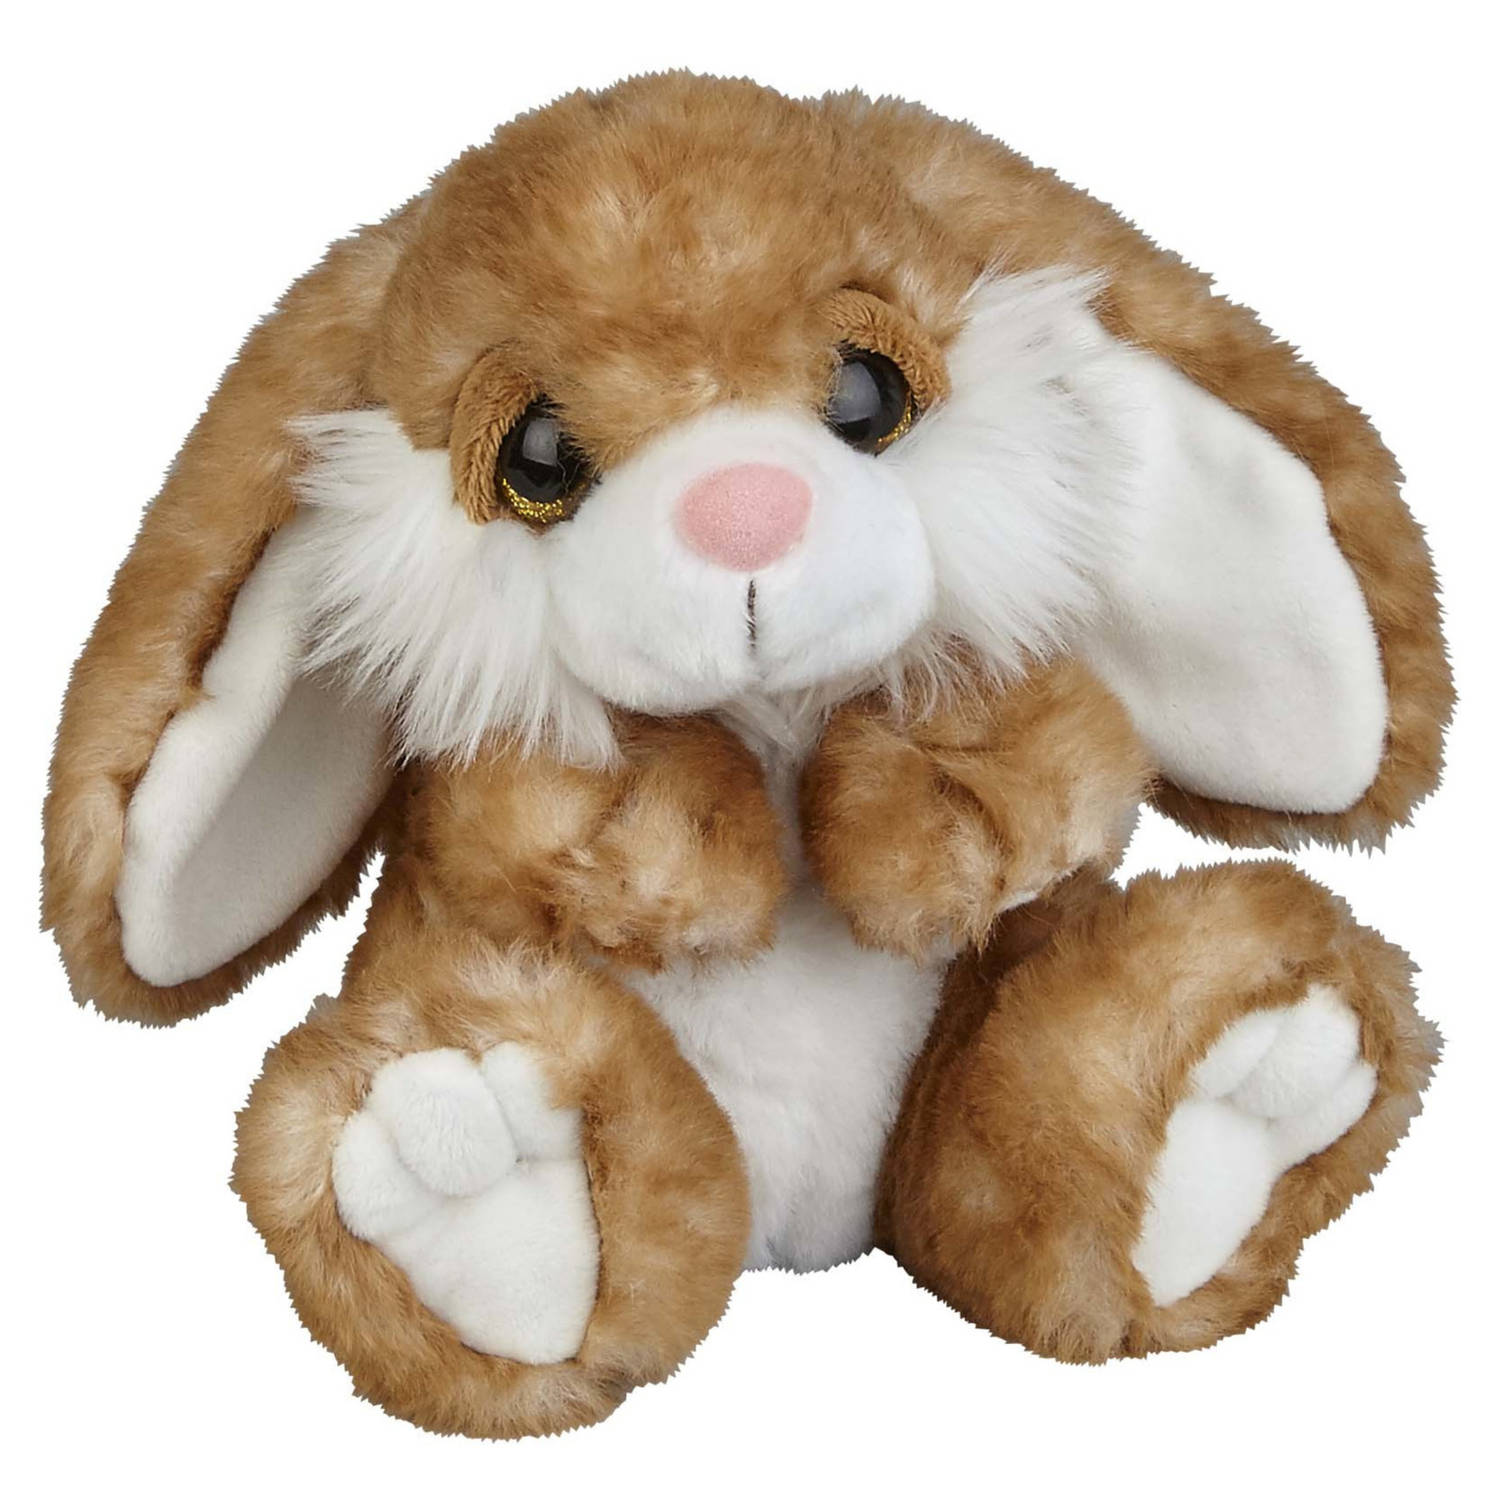 Pluche knuffel dieren Konijn van 18 cm - Speelgoed knuffels - Leuk als cadeau voor kinderen